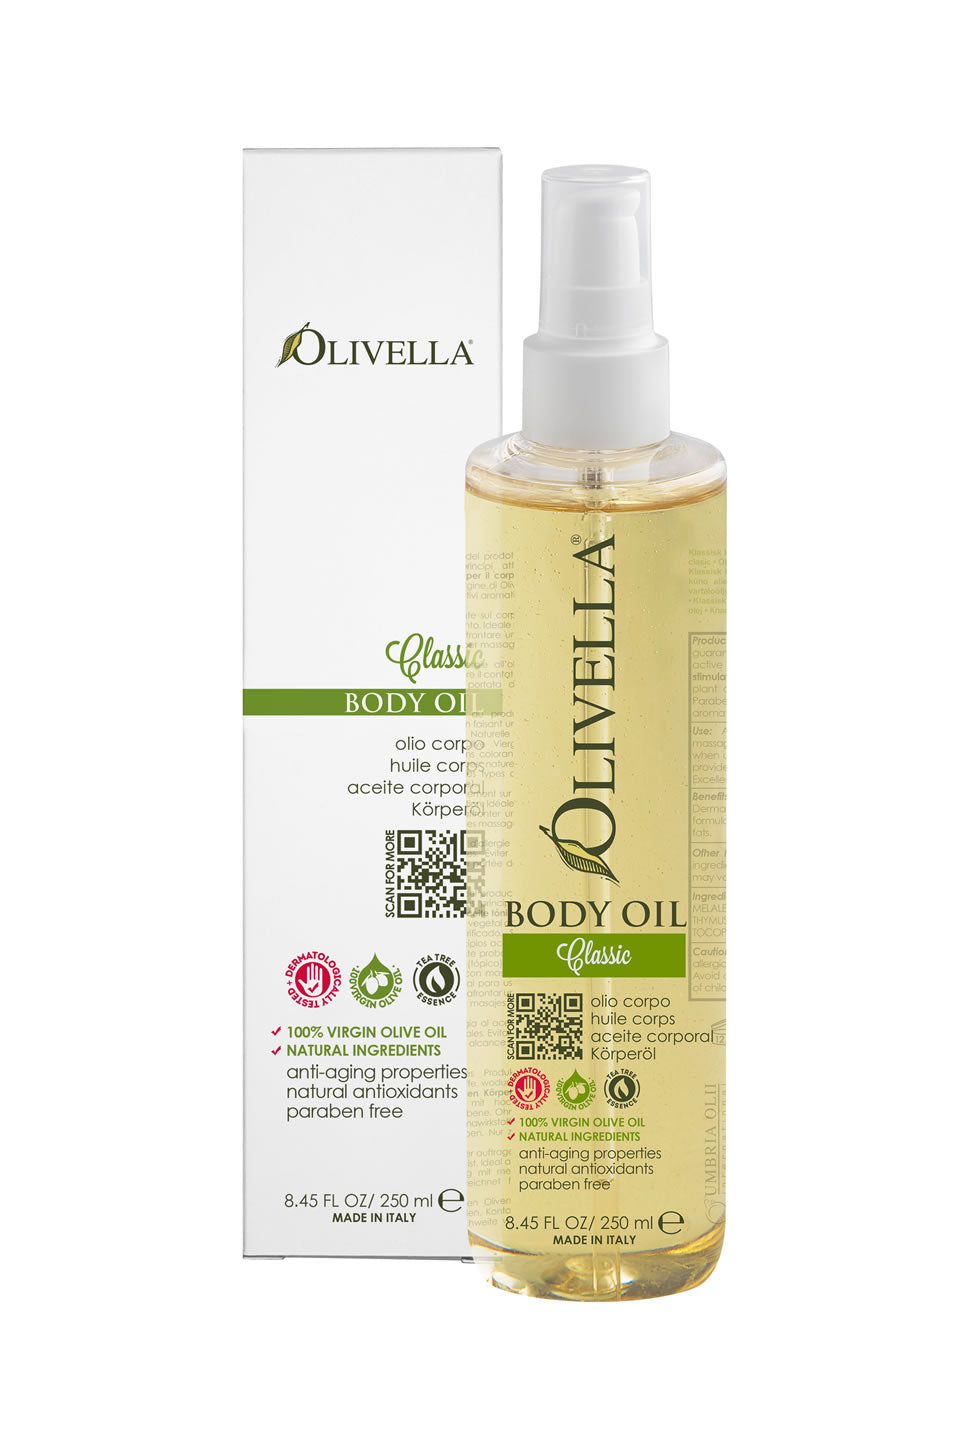 Olivella Body Oil - Classic 8.45 Oz - Olivella